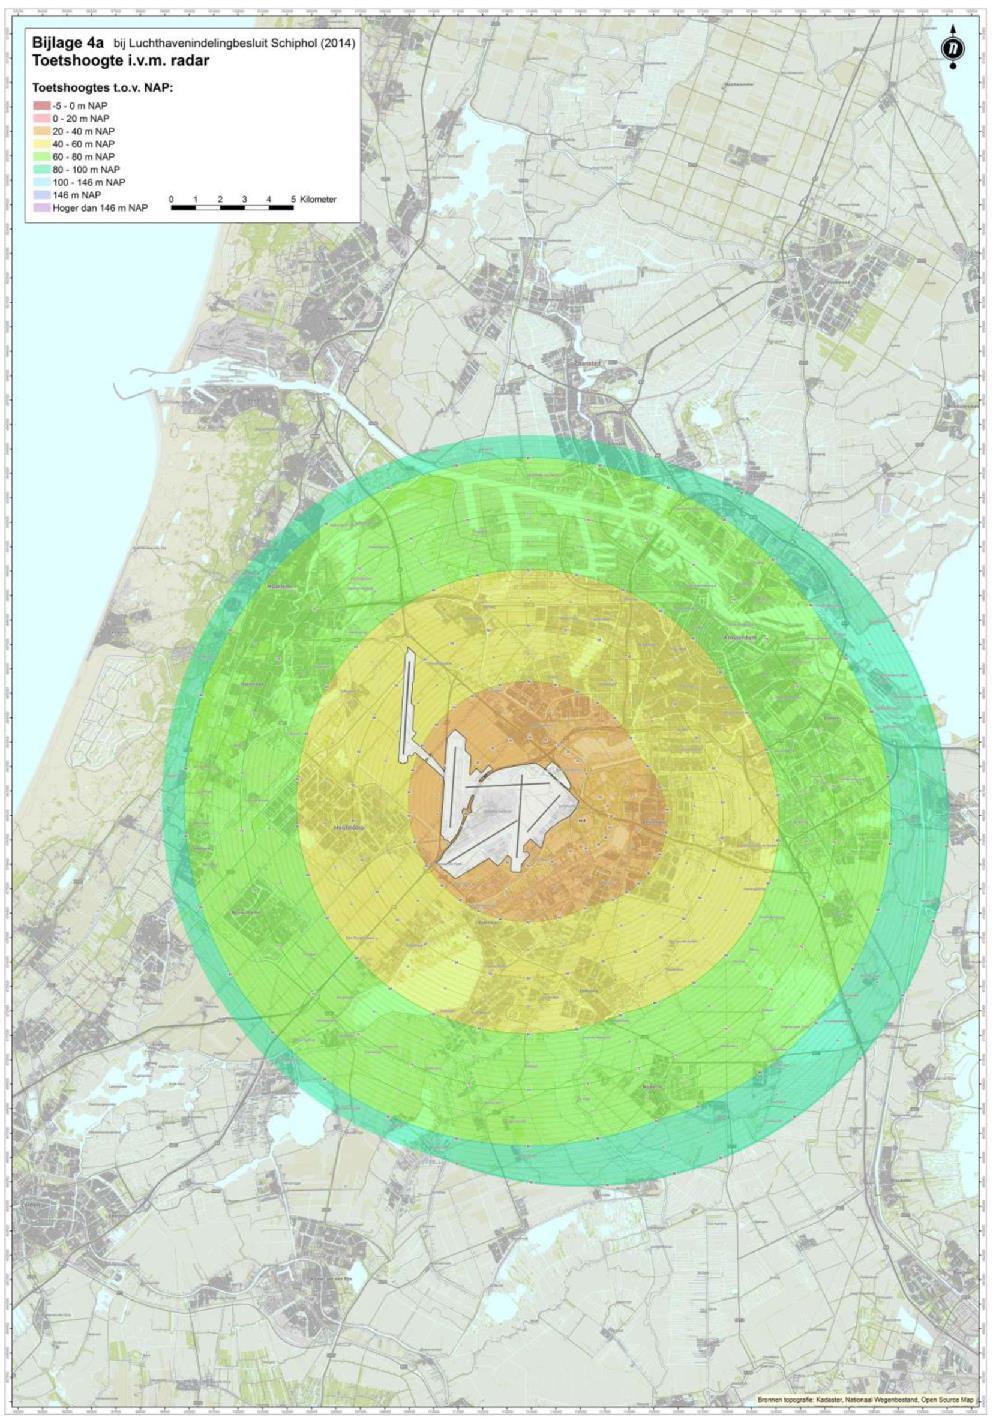 TNO RAPPORT PERSEUS 2018 20 / 51 Figuur 17: Bijlage 4a van de LIB Schiphol, met de zones met de tiphoogtes, ten opzichte van NAP, waarboven een toetsing moet plaatsvinden in hoeverre de radars op